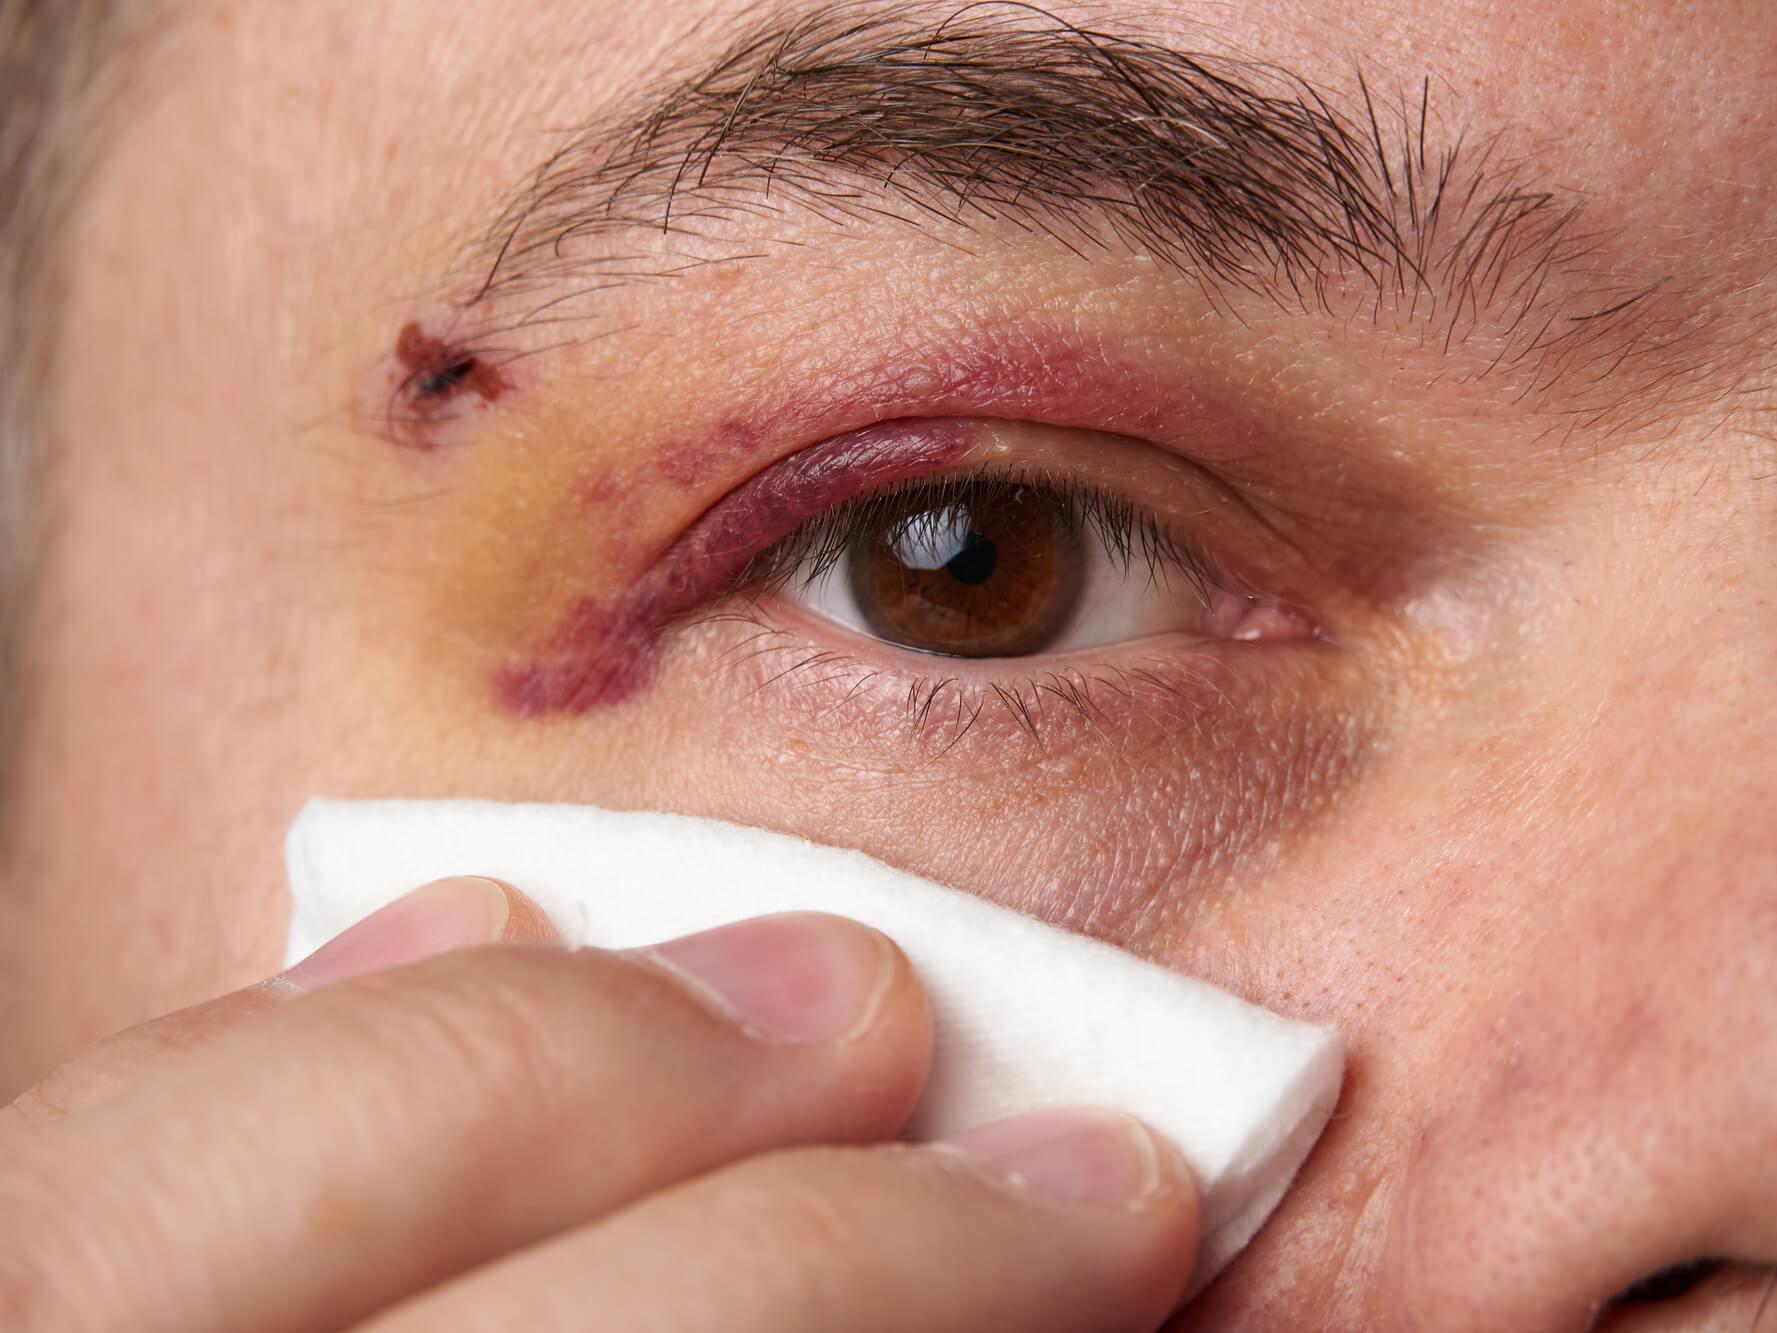 Applicare qualcosa di freddo sull'occhio subito dopo una lesione può ridurre il gonfiore e lenire il dolore.